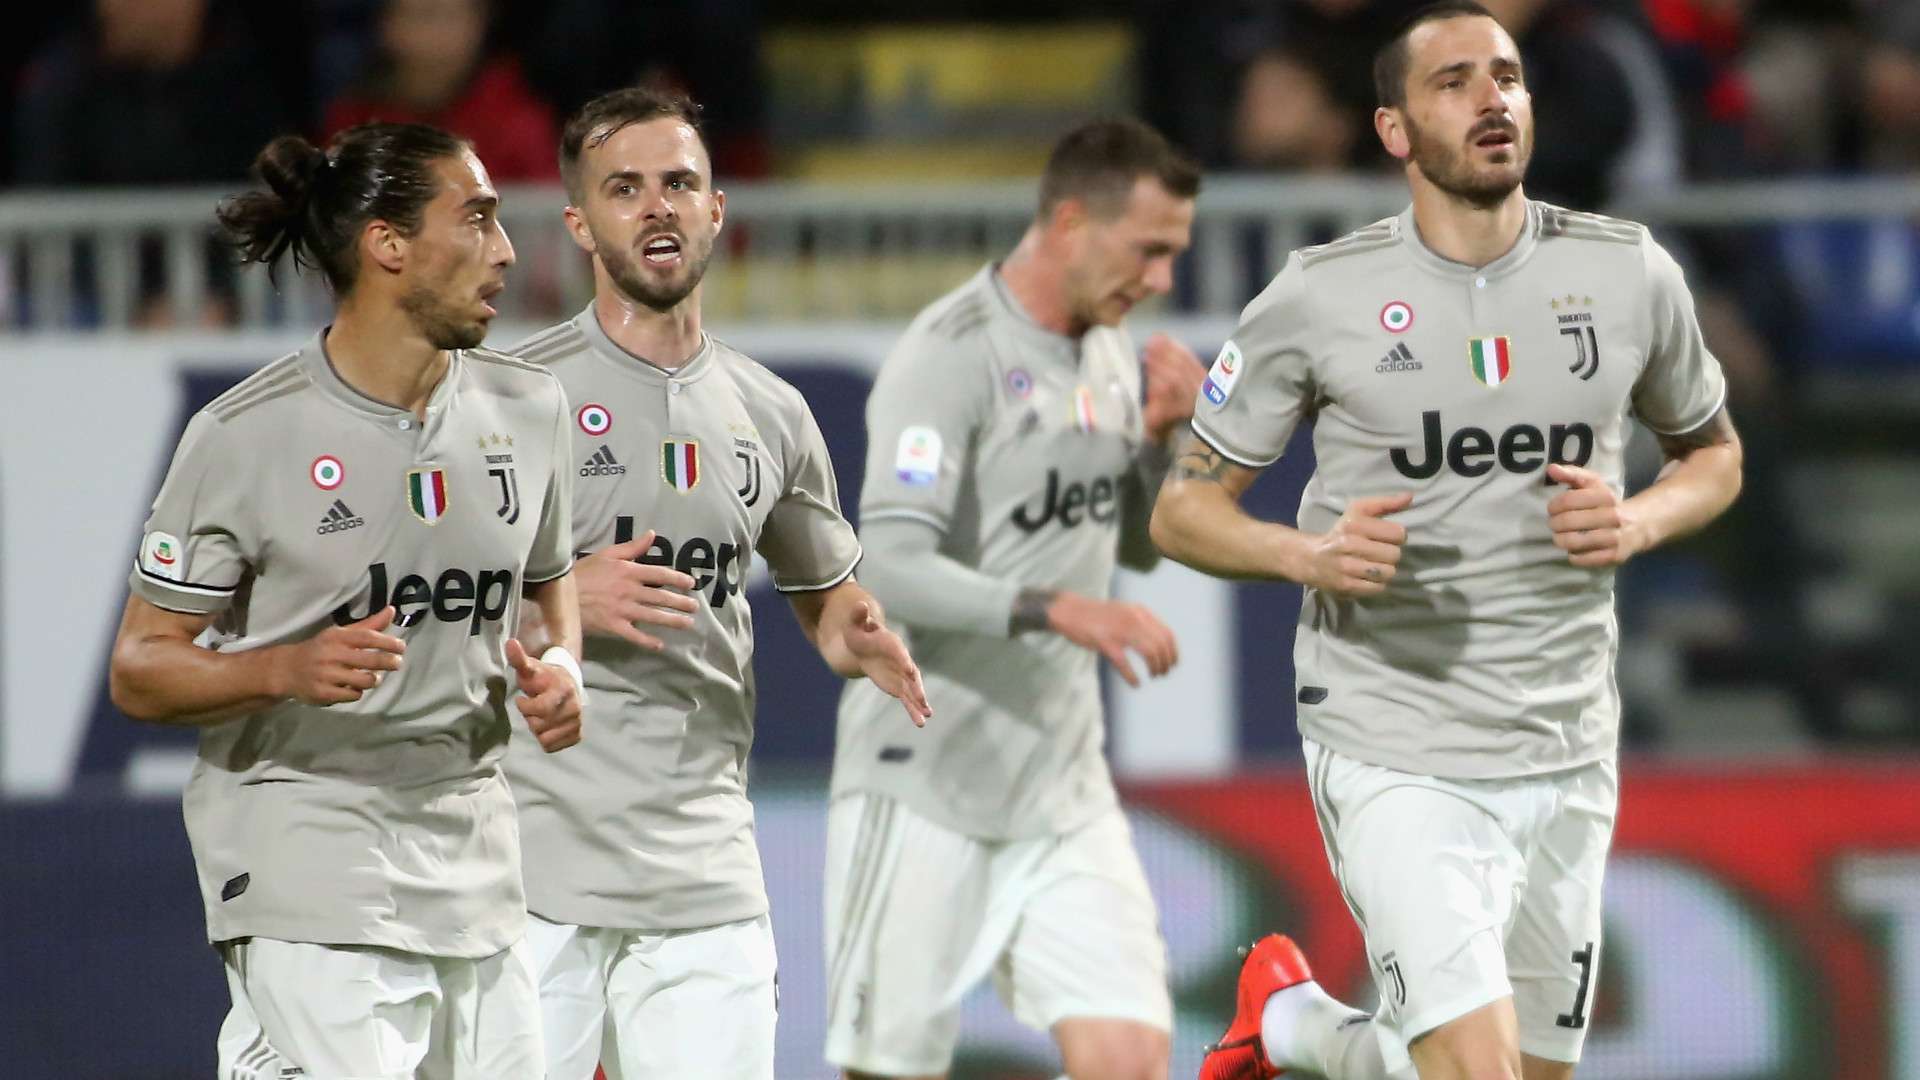 Juventus celebrating goal against Cagliari